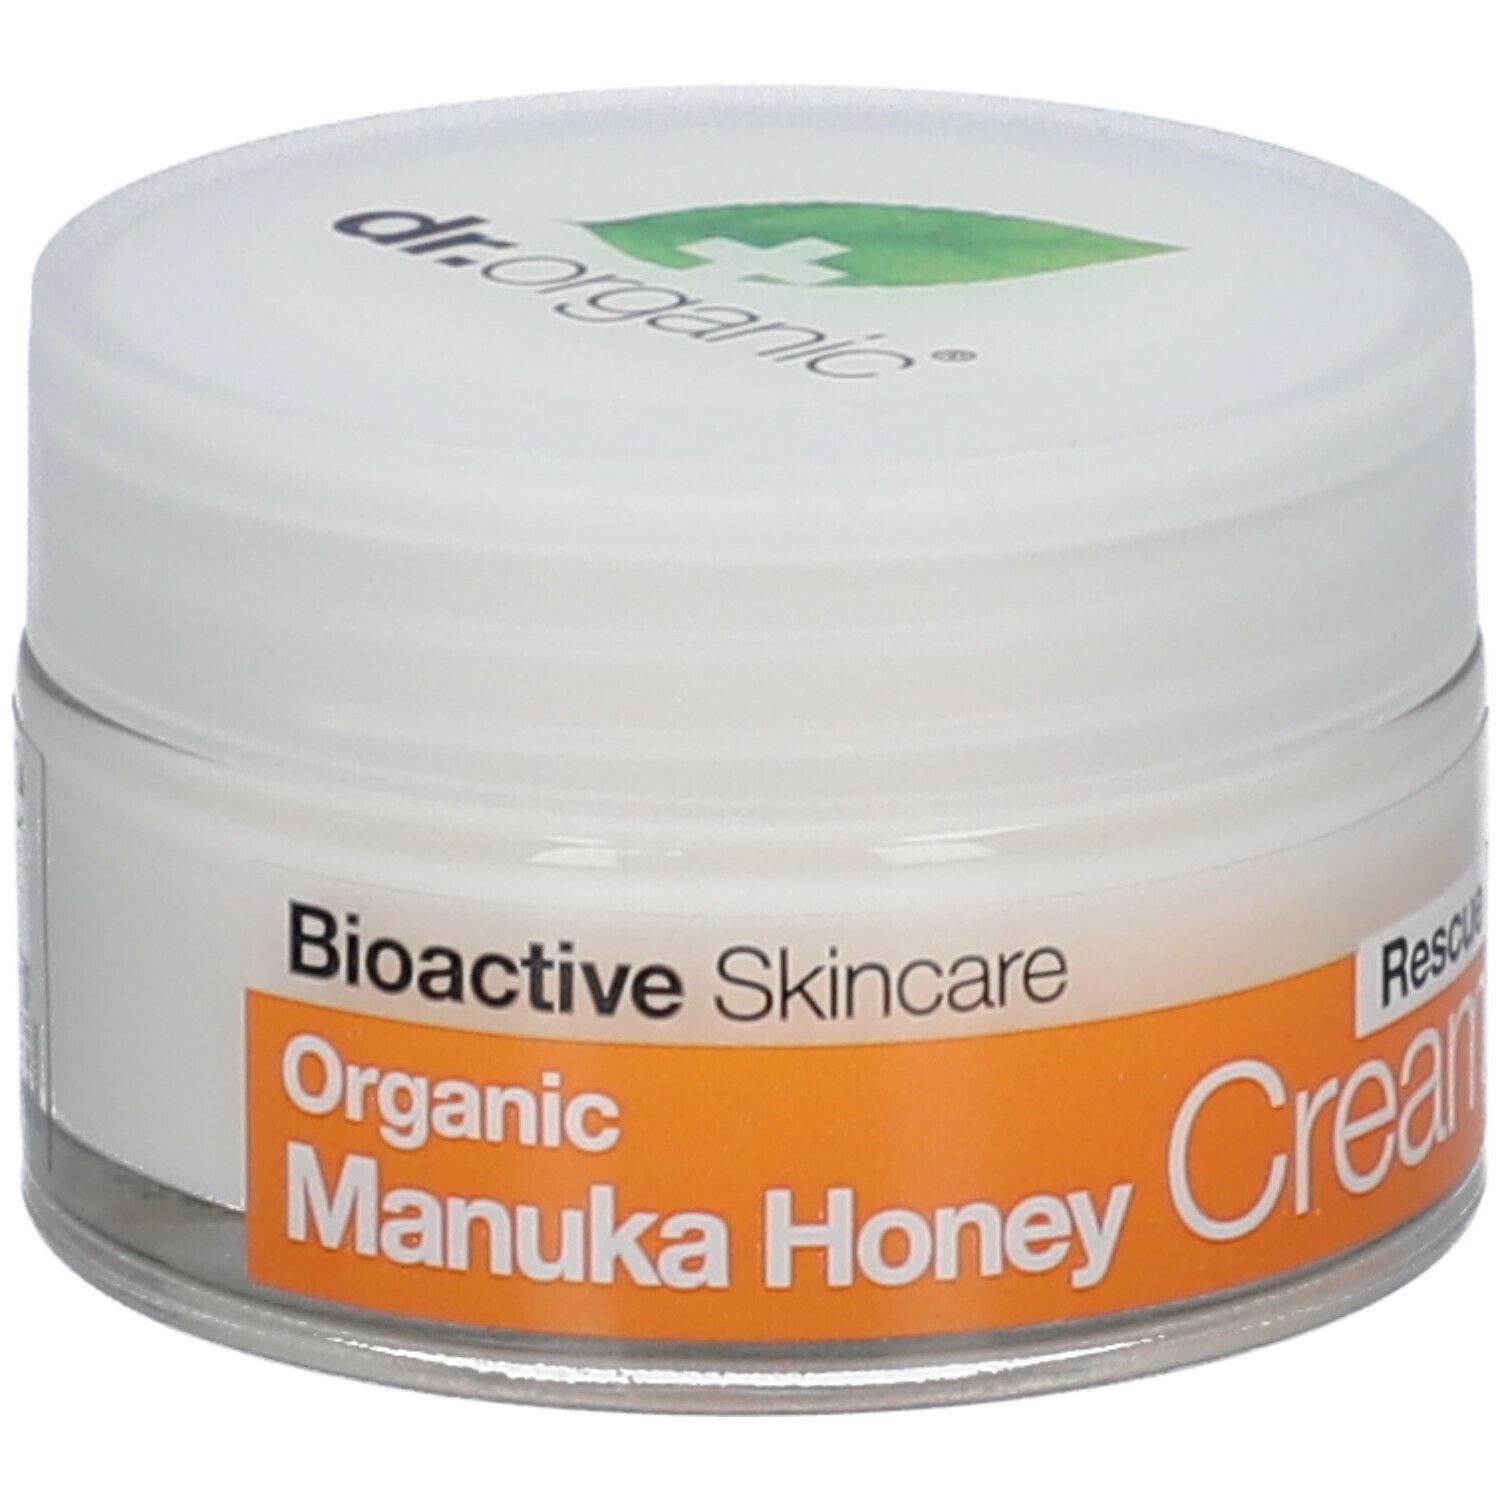 Dr. Organic® Manuka Honey Rescue Cream